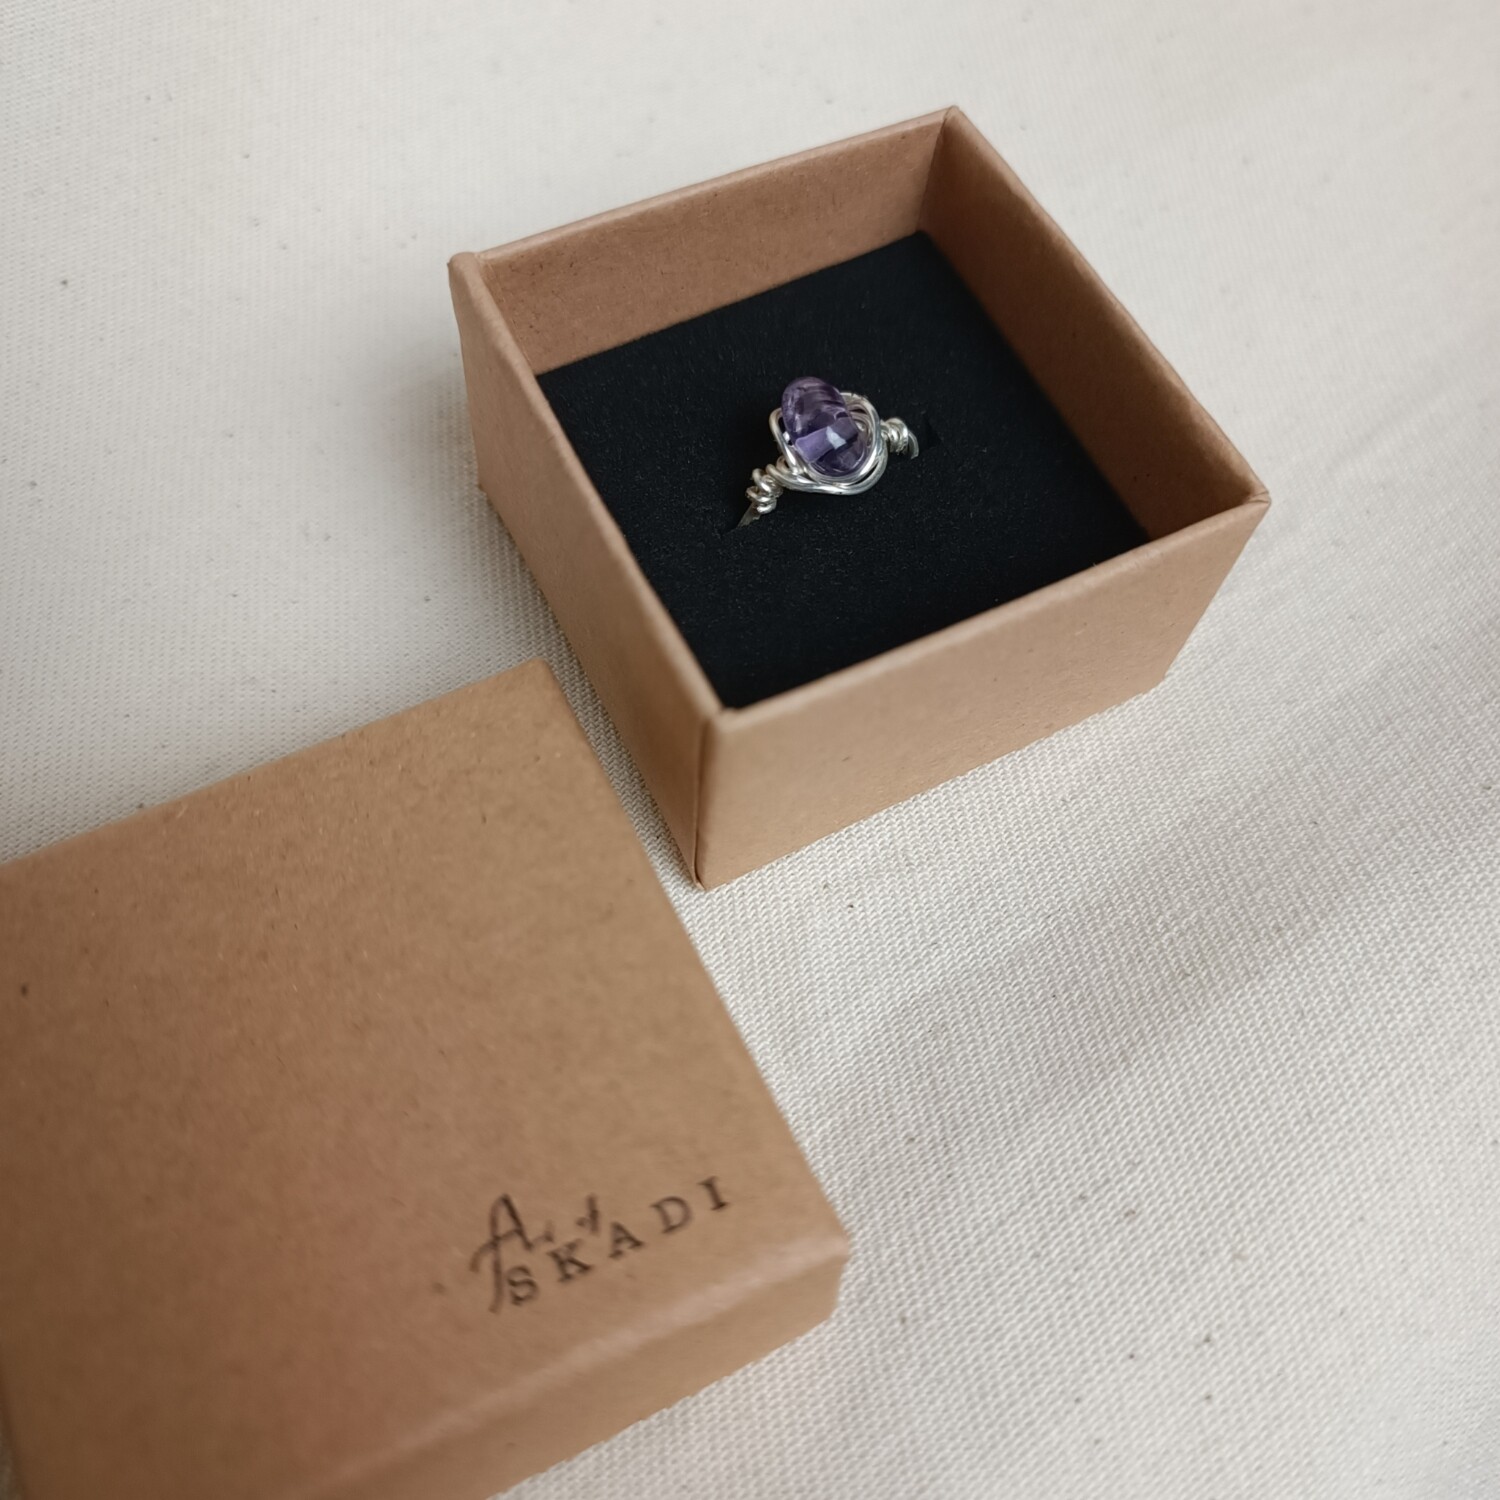 Silberfarbender Ring Gr.48 mit violetten Stein